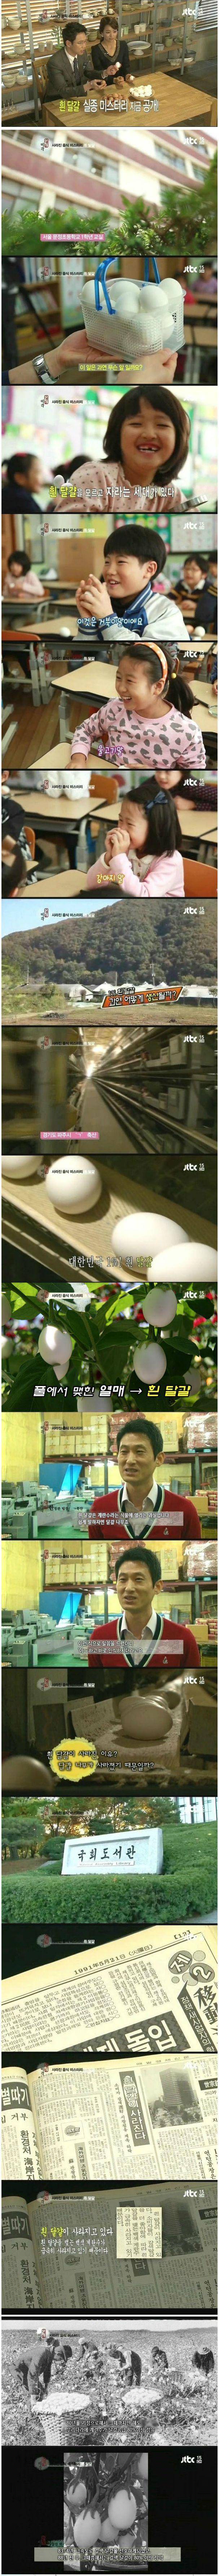 흰 달걀의 사라진 이유.jpg